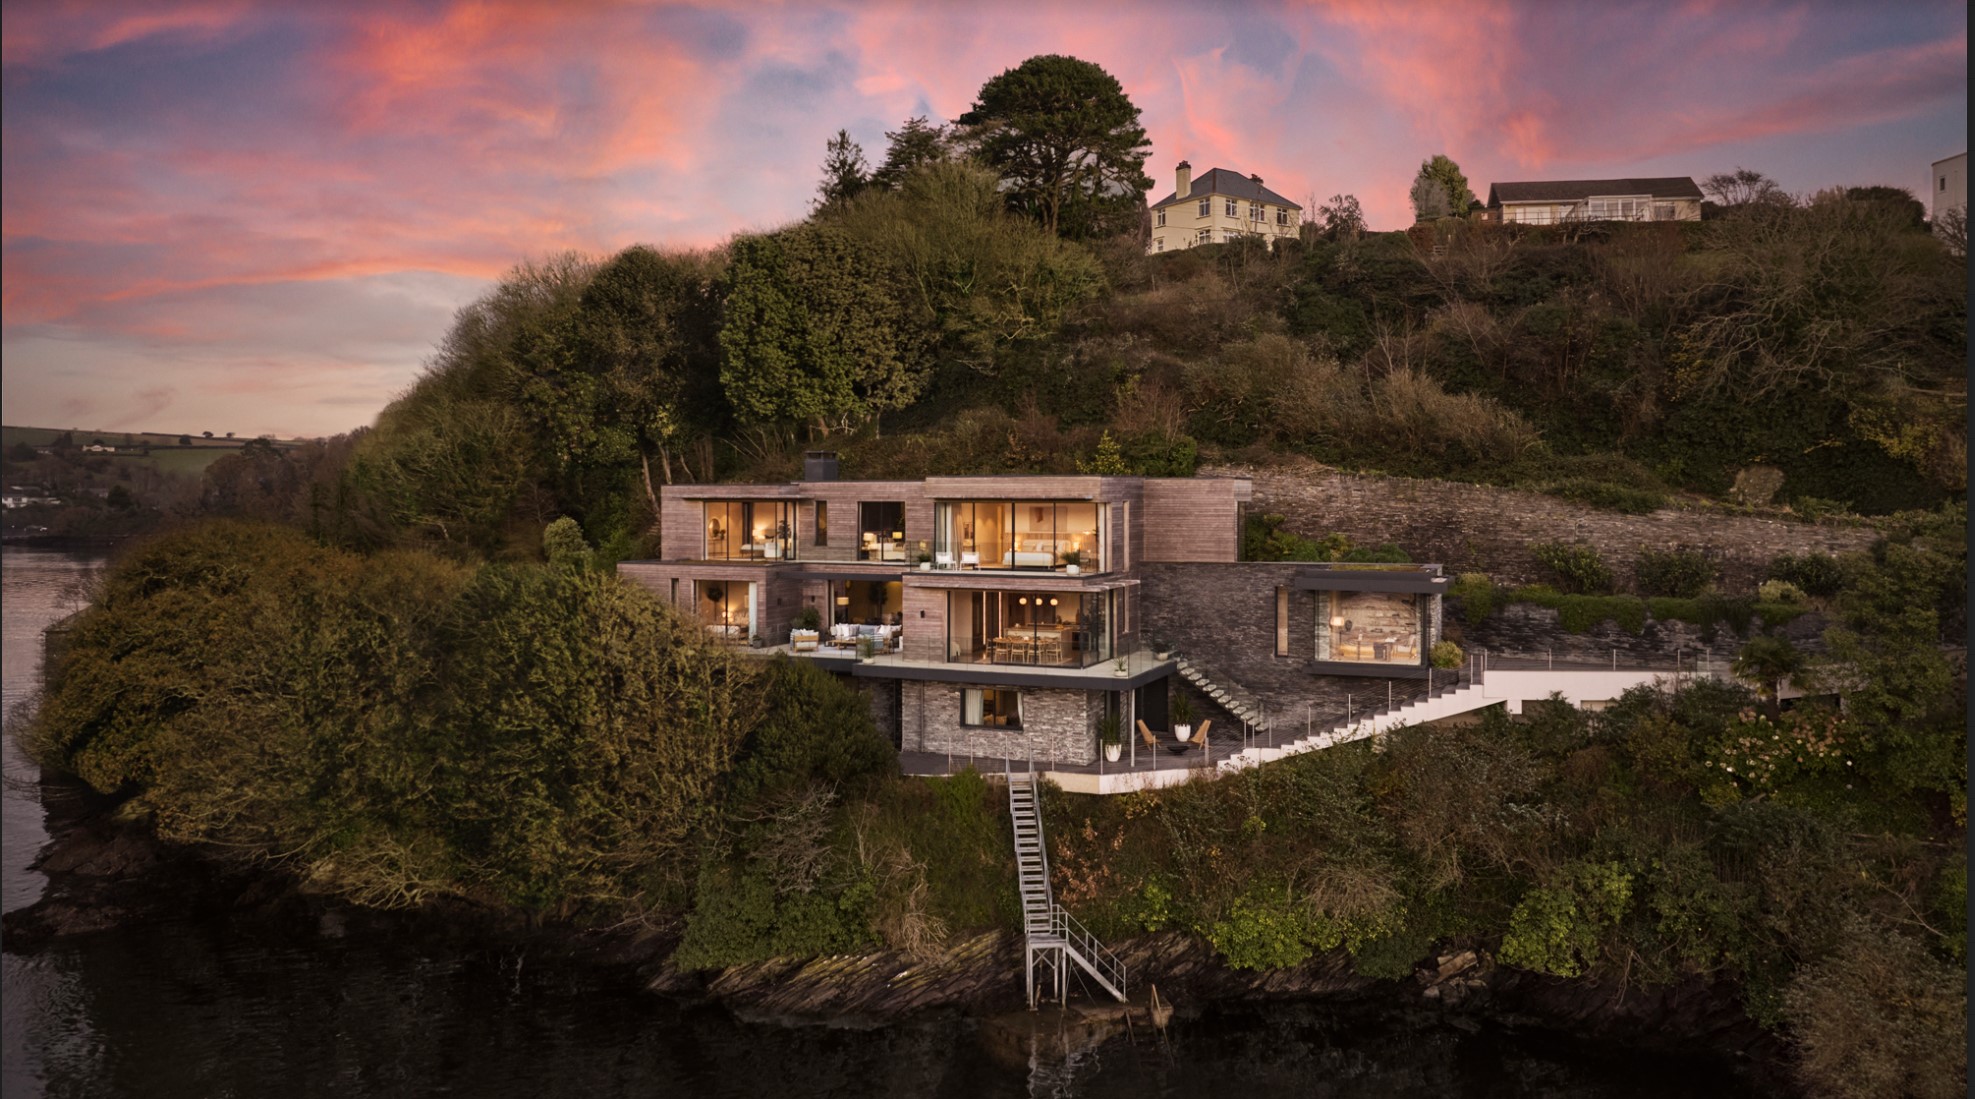 Die Großmutter hatte das 4,5 Millionen Pfund teure Haus am Wasser in Cornwall erworben